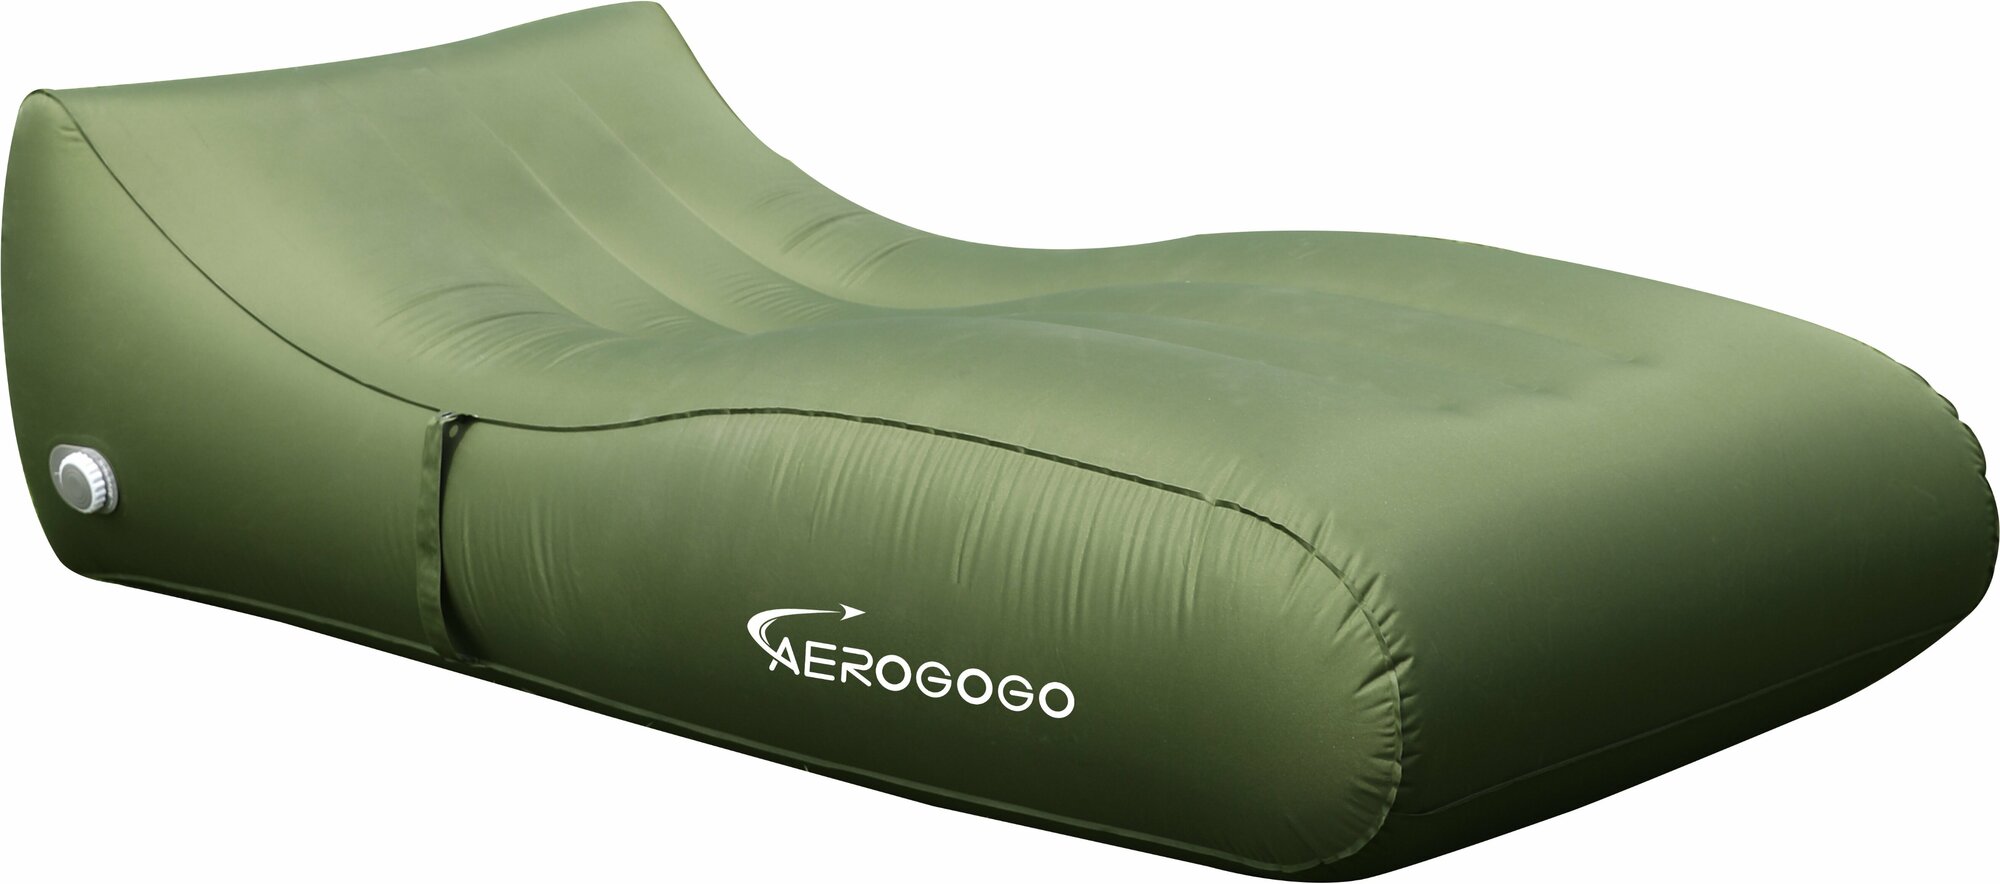 Надувной матрас-шезлонг Aerogogo GIGA PS2 зеленый (с автоматическим надуванием)